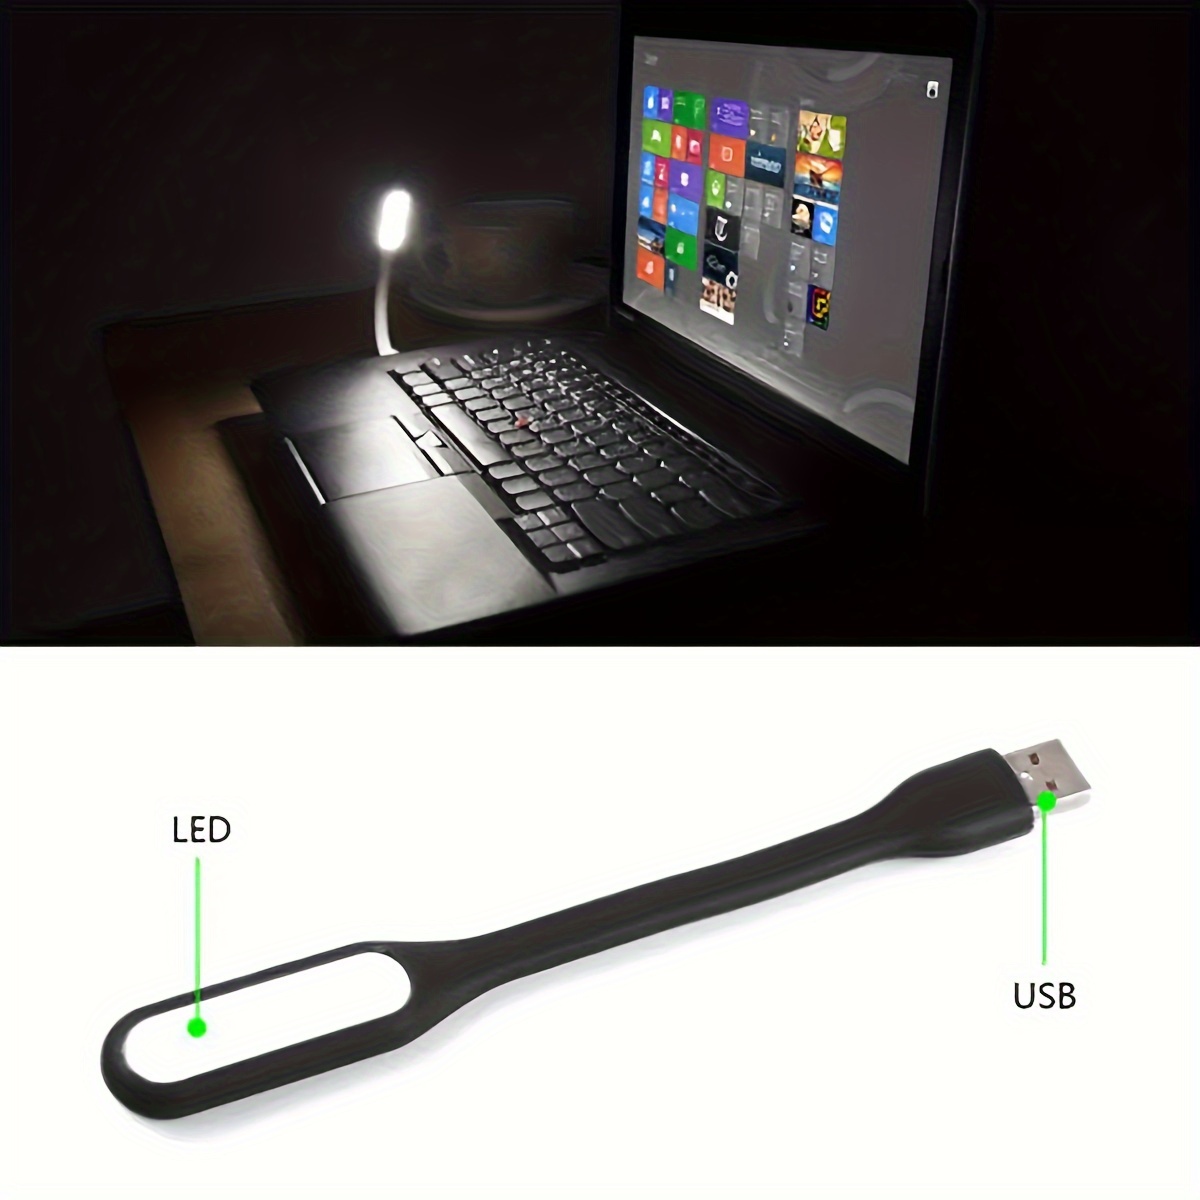 LUZ LED LÁMPARA PARA NOTEBOOK USB FLEXIBLE